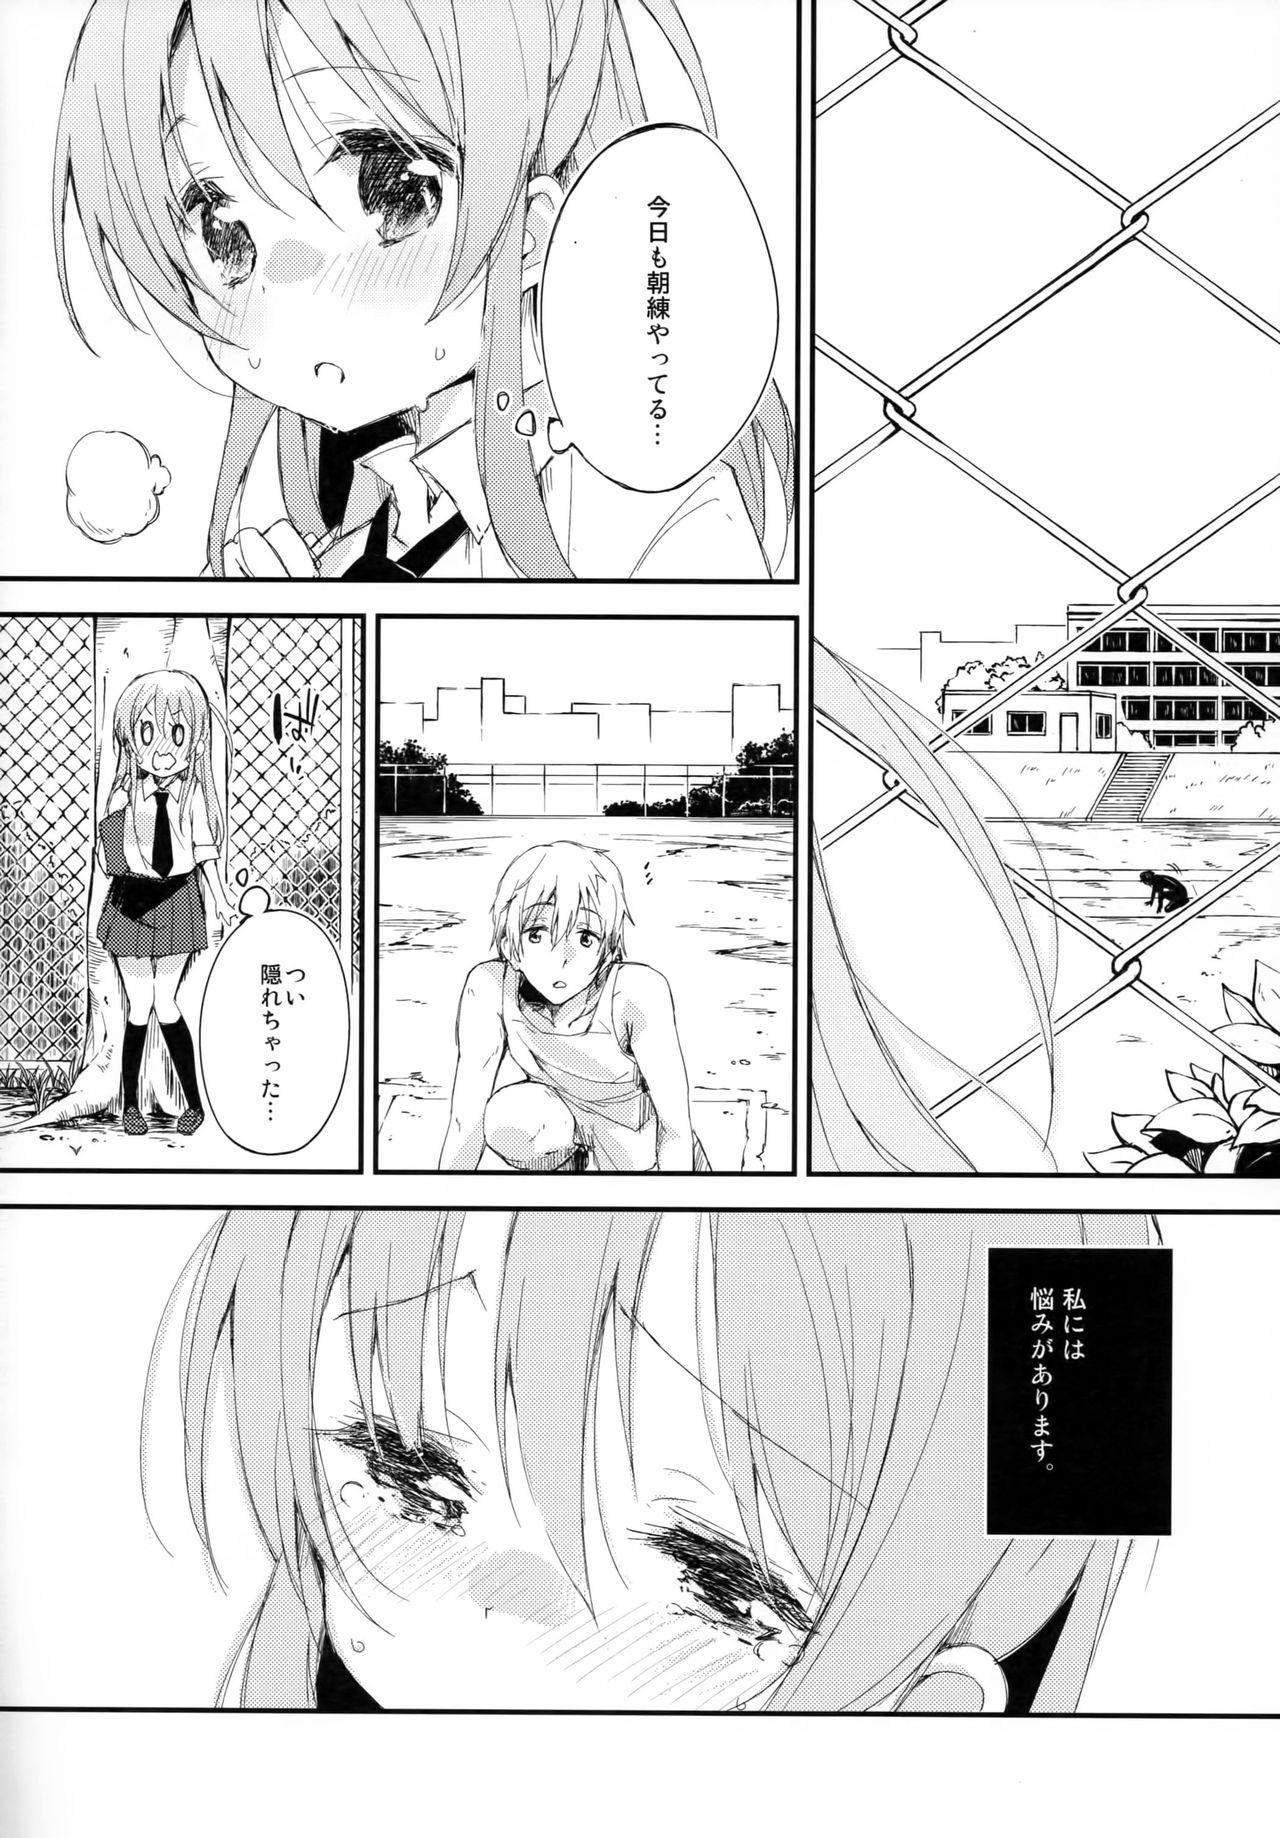 Letsdoeit Komorebi ni Oyogu, Natsu no Kaori. Sucking - Page 5